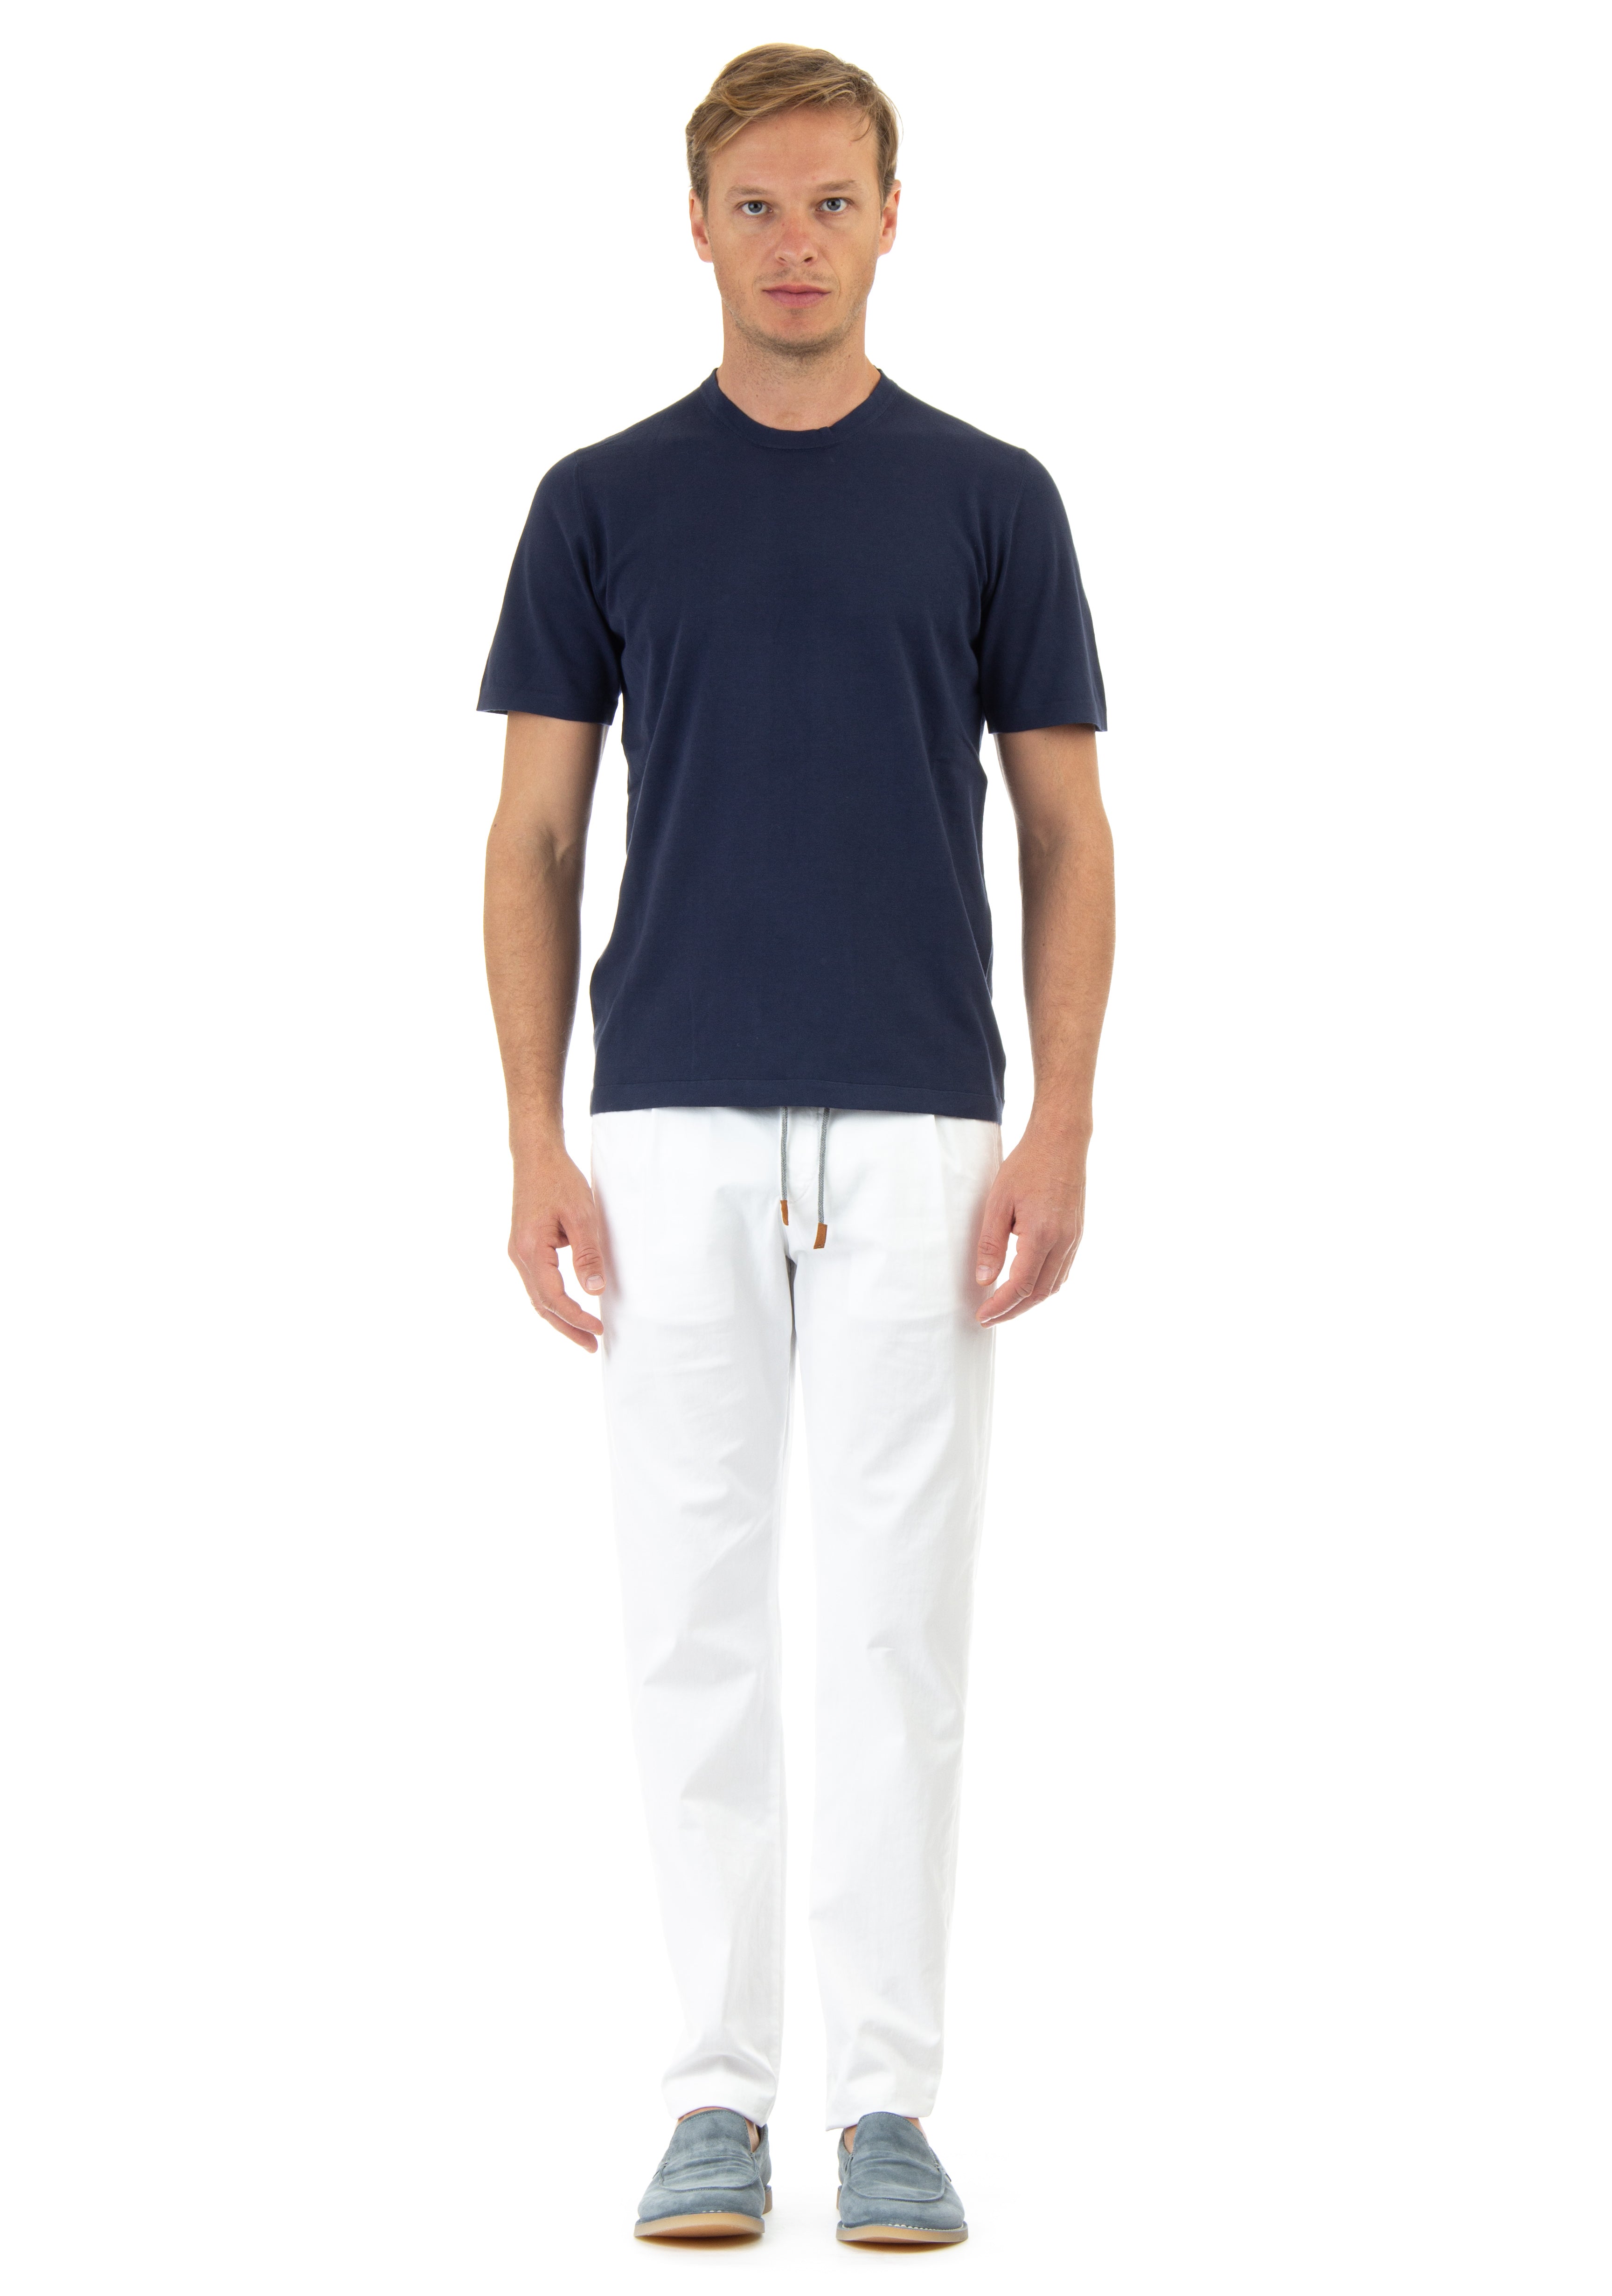 T-shirt in leggero cotone giza45 superior